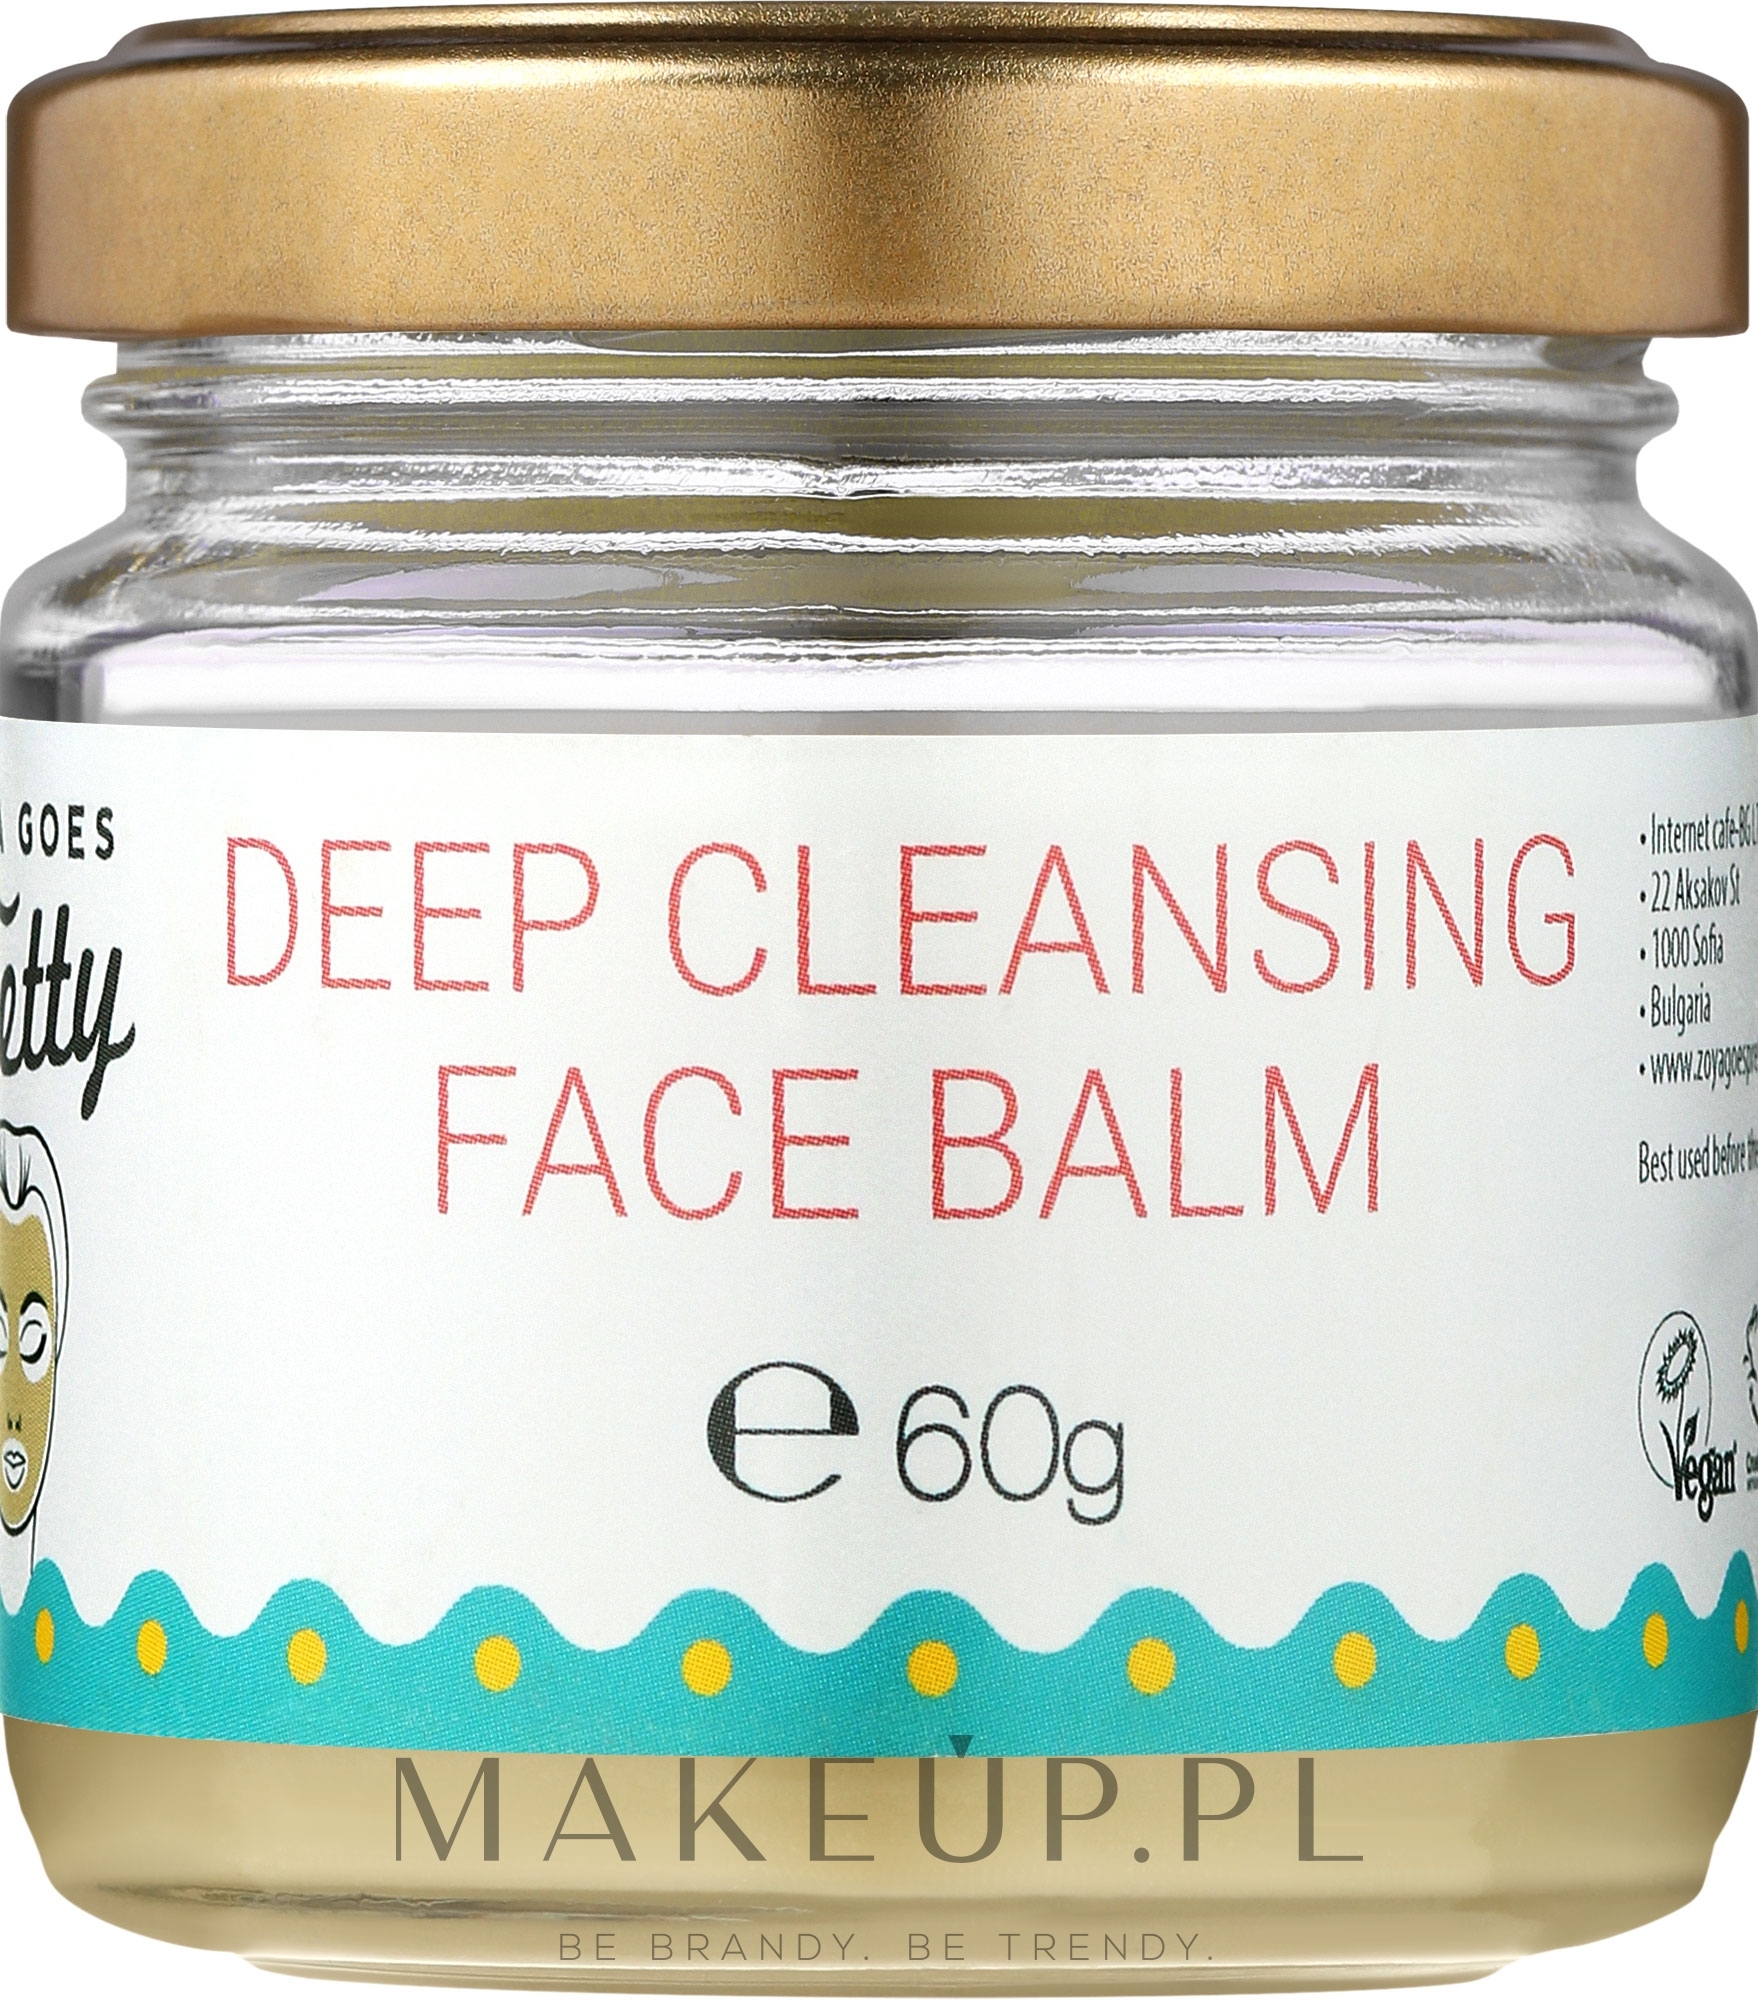 Głęboko oczyszczający balsam do twarzy - Zoya Goes Deep Cleansing Face Balm  — Zdjęcie 60 g